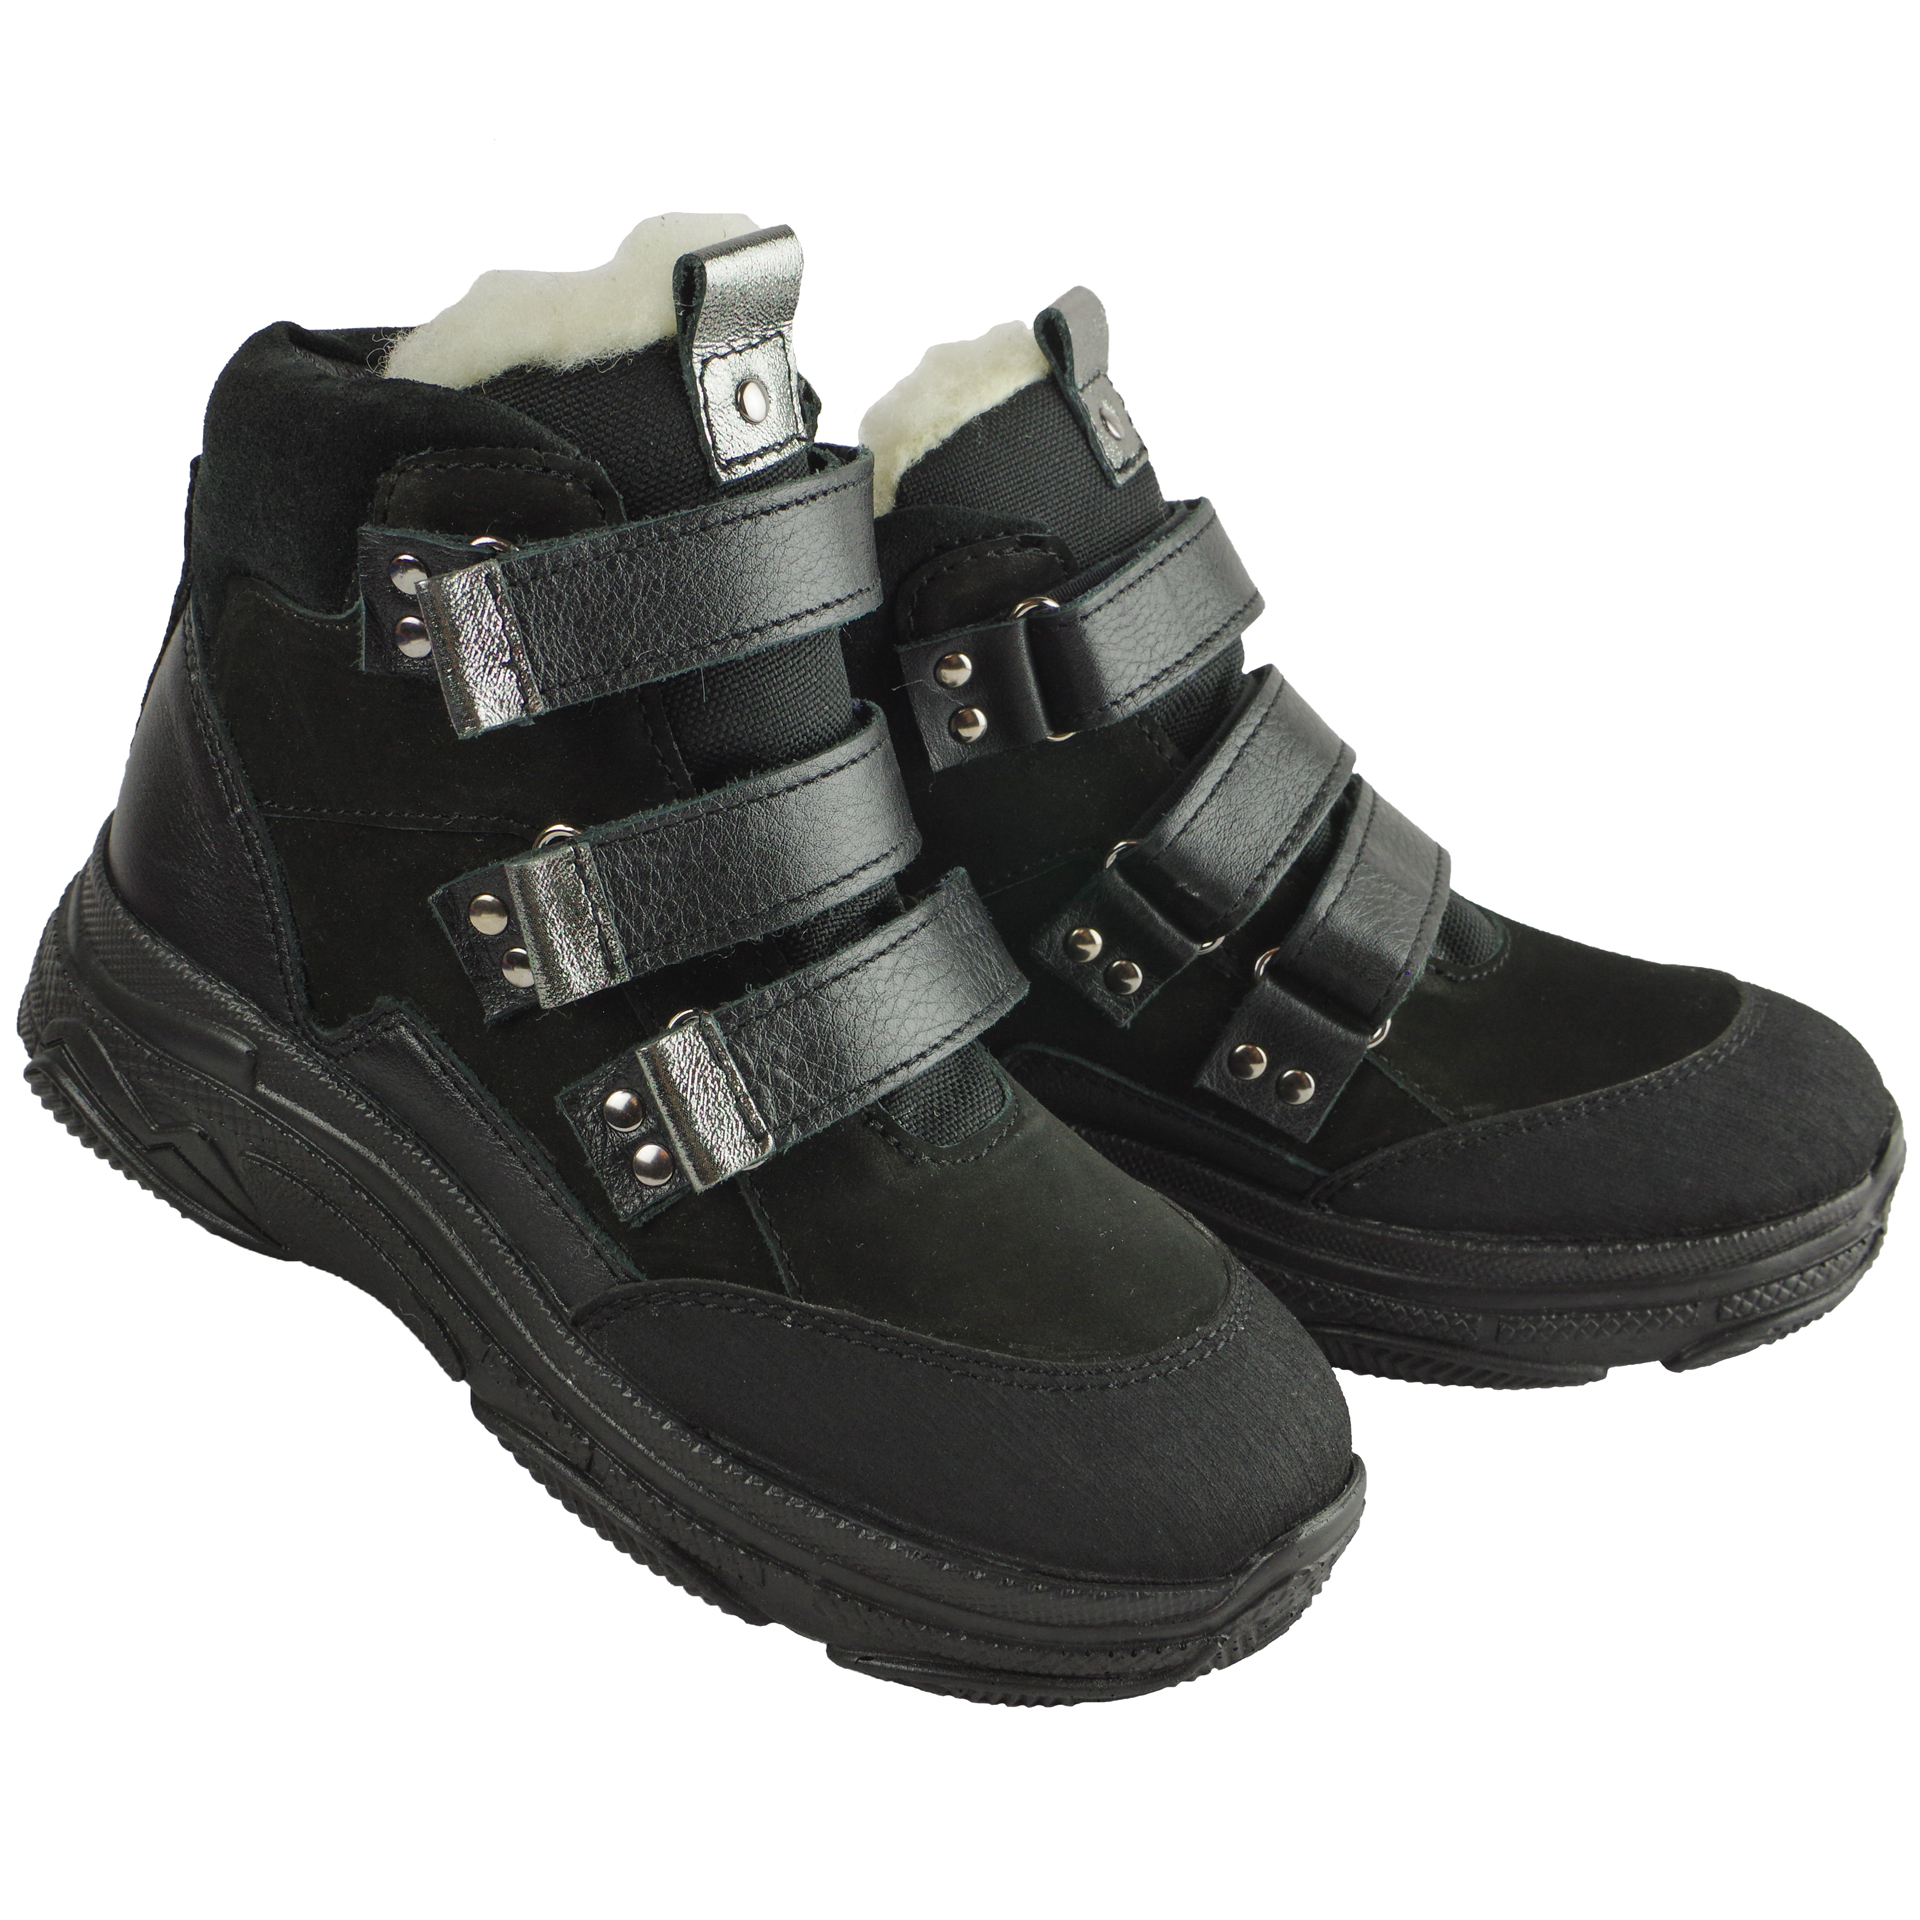 Зимові черевики дитячі (2081) для дівчинки, матеріал Натуральна шкіра, Чорний колір, 31-38 розміри – Sole Kids. Фото 2